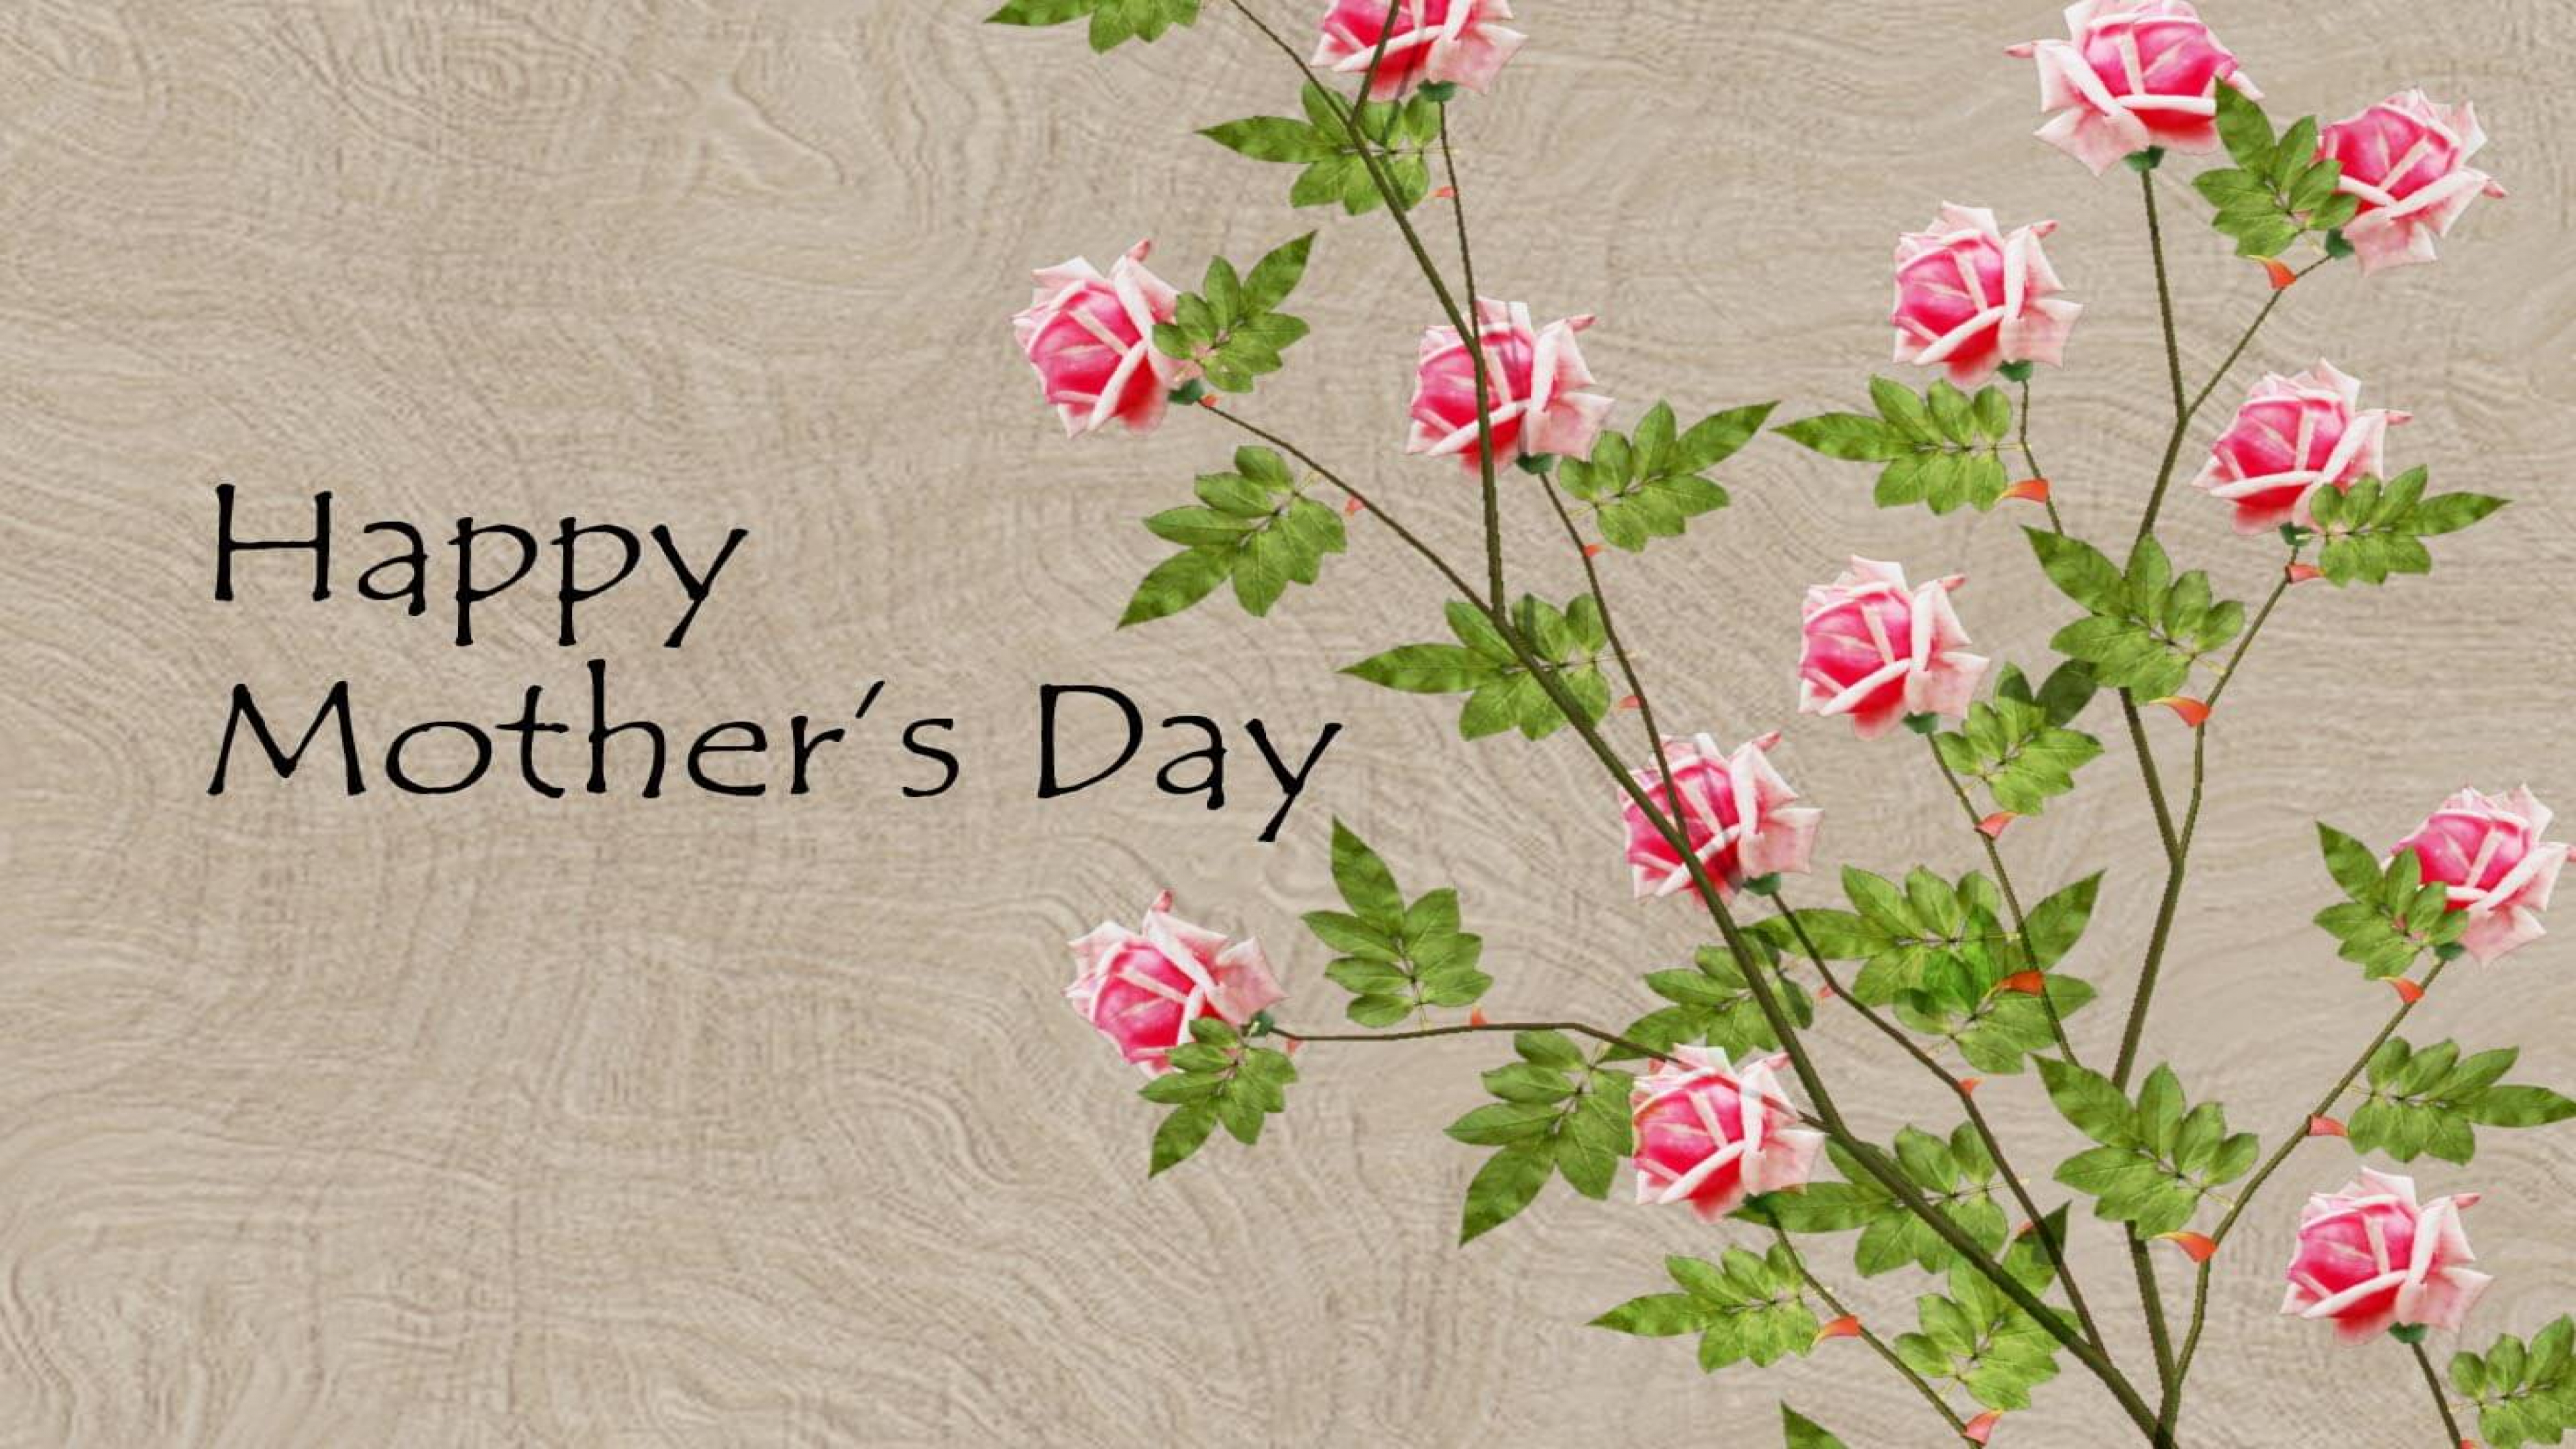 День матери в англии. Happy mother s Day. Mother's Day открытка. Мазерс Дэй. Поздравление с днем матери на английском.